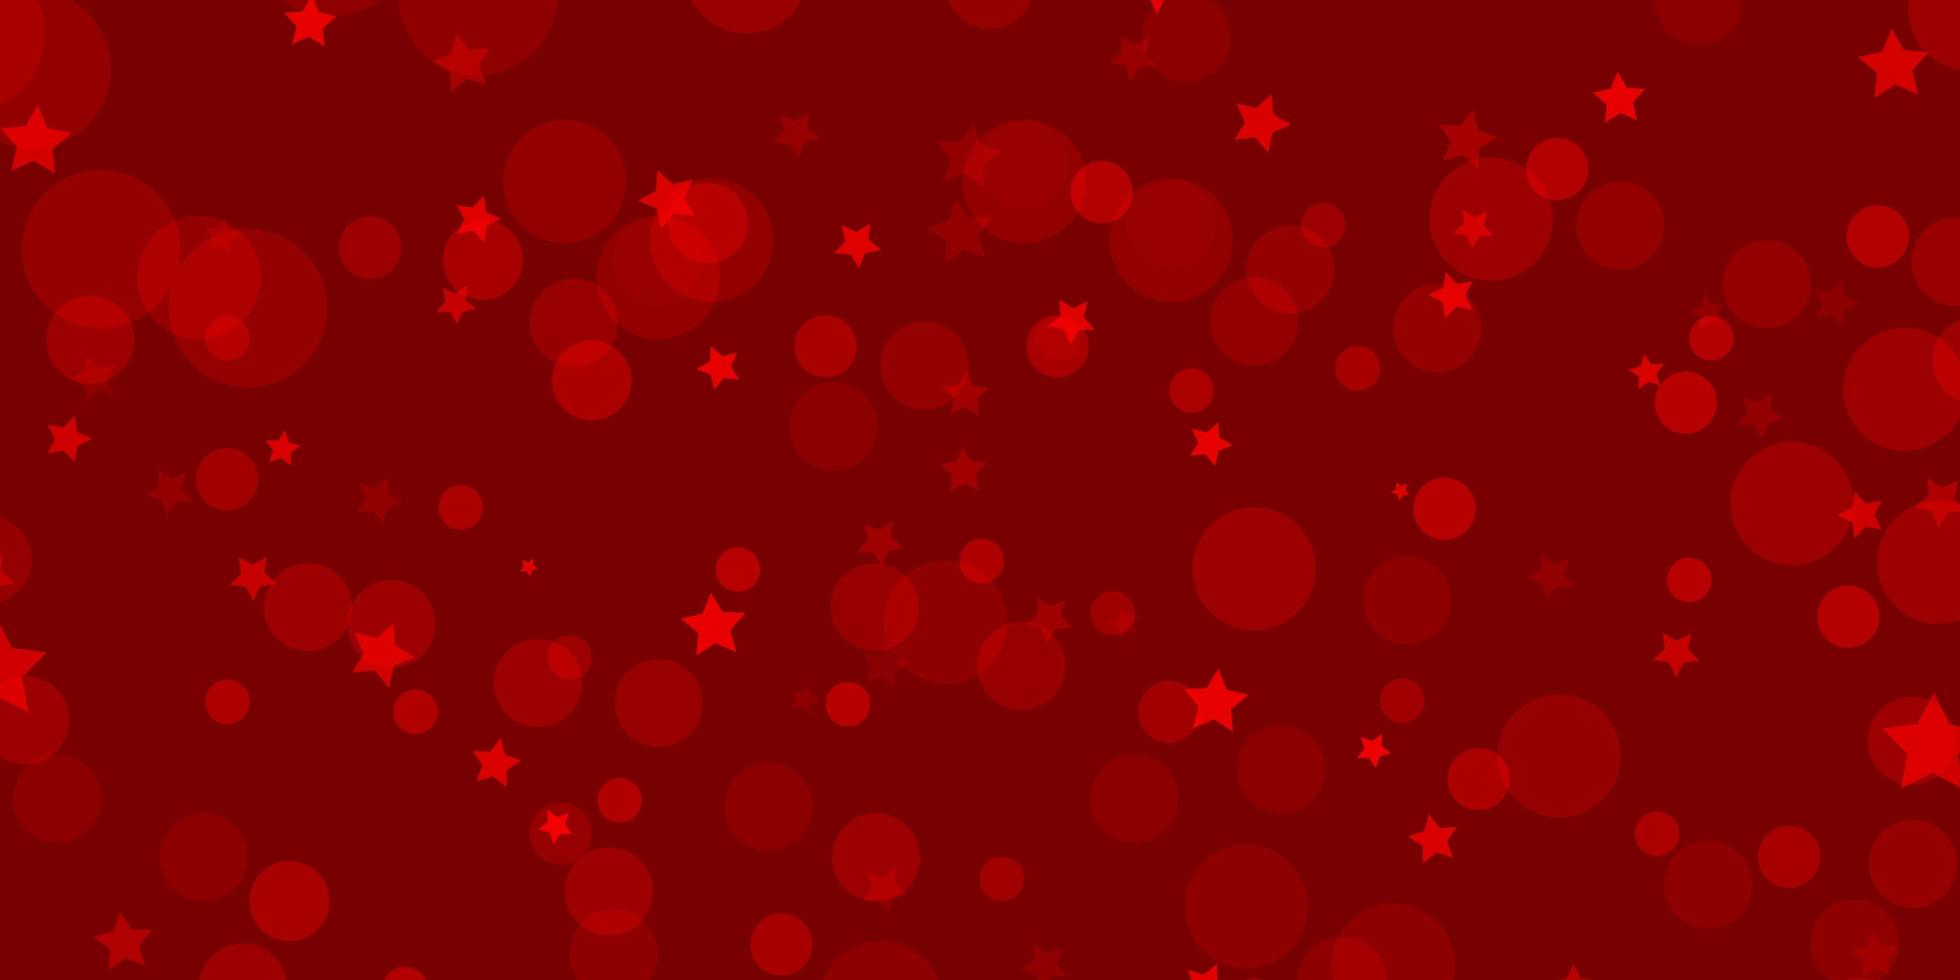 fundo vector vermelho claro com círculos, estrelas. desenho abstrato em estilo gradiente com bolhas, estrelas. padrão para tecidos da moda, papéis de parede.